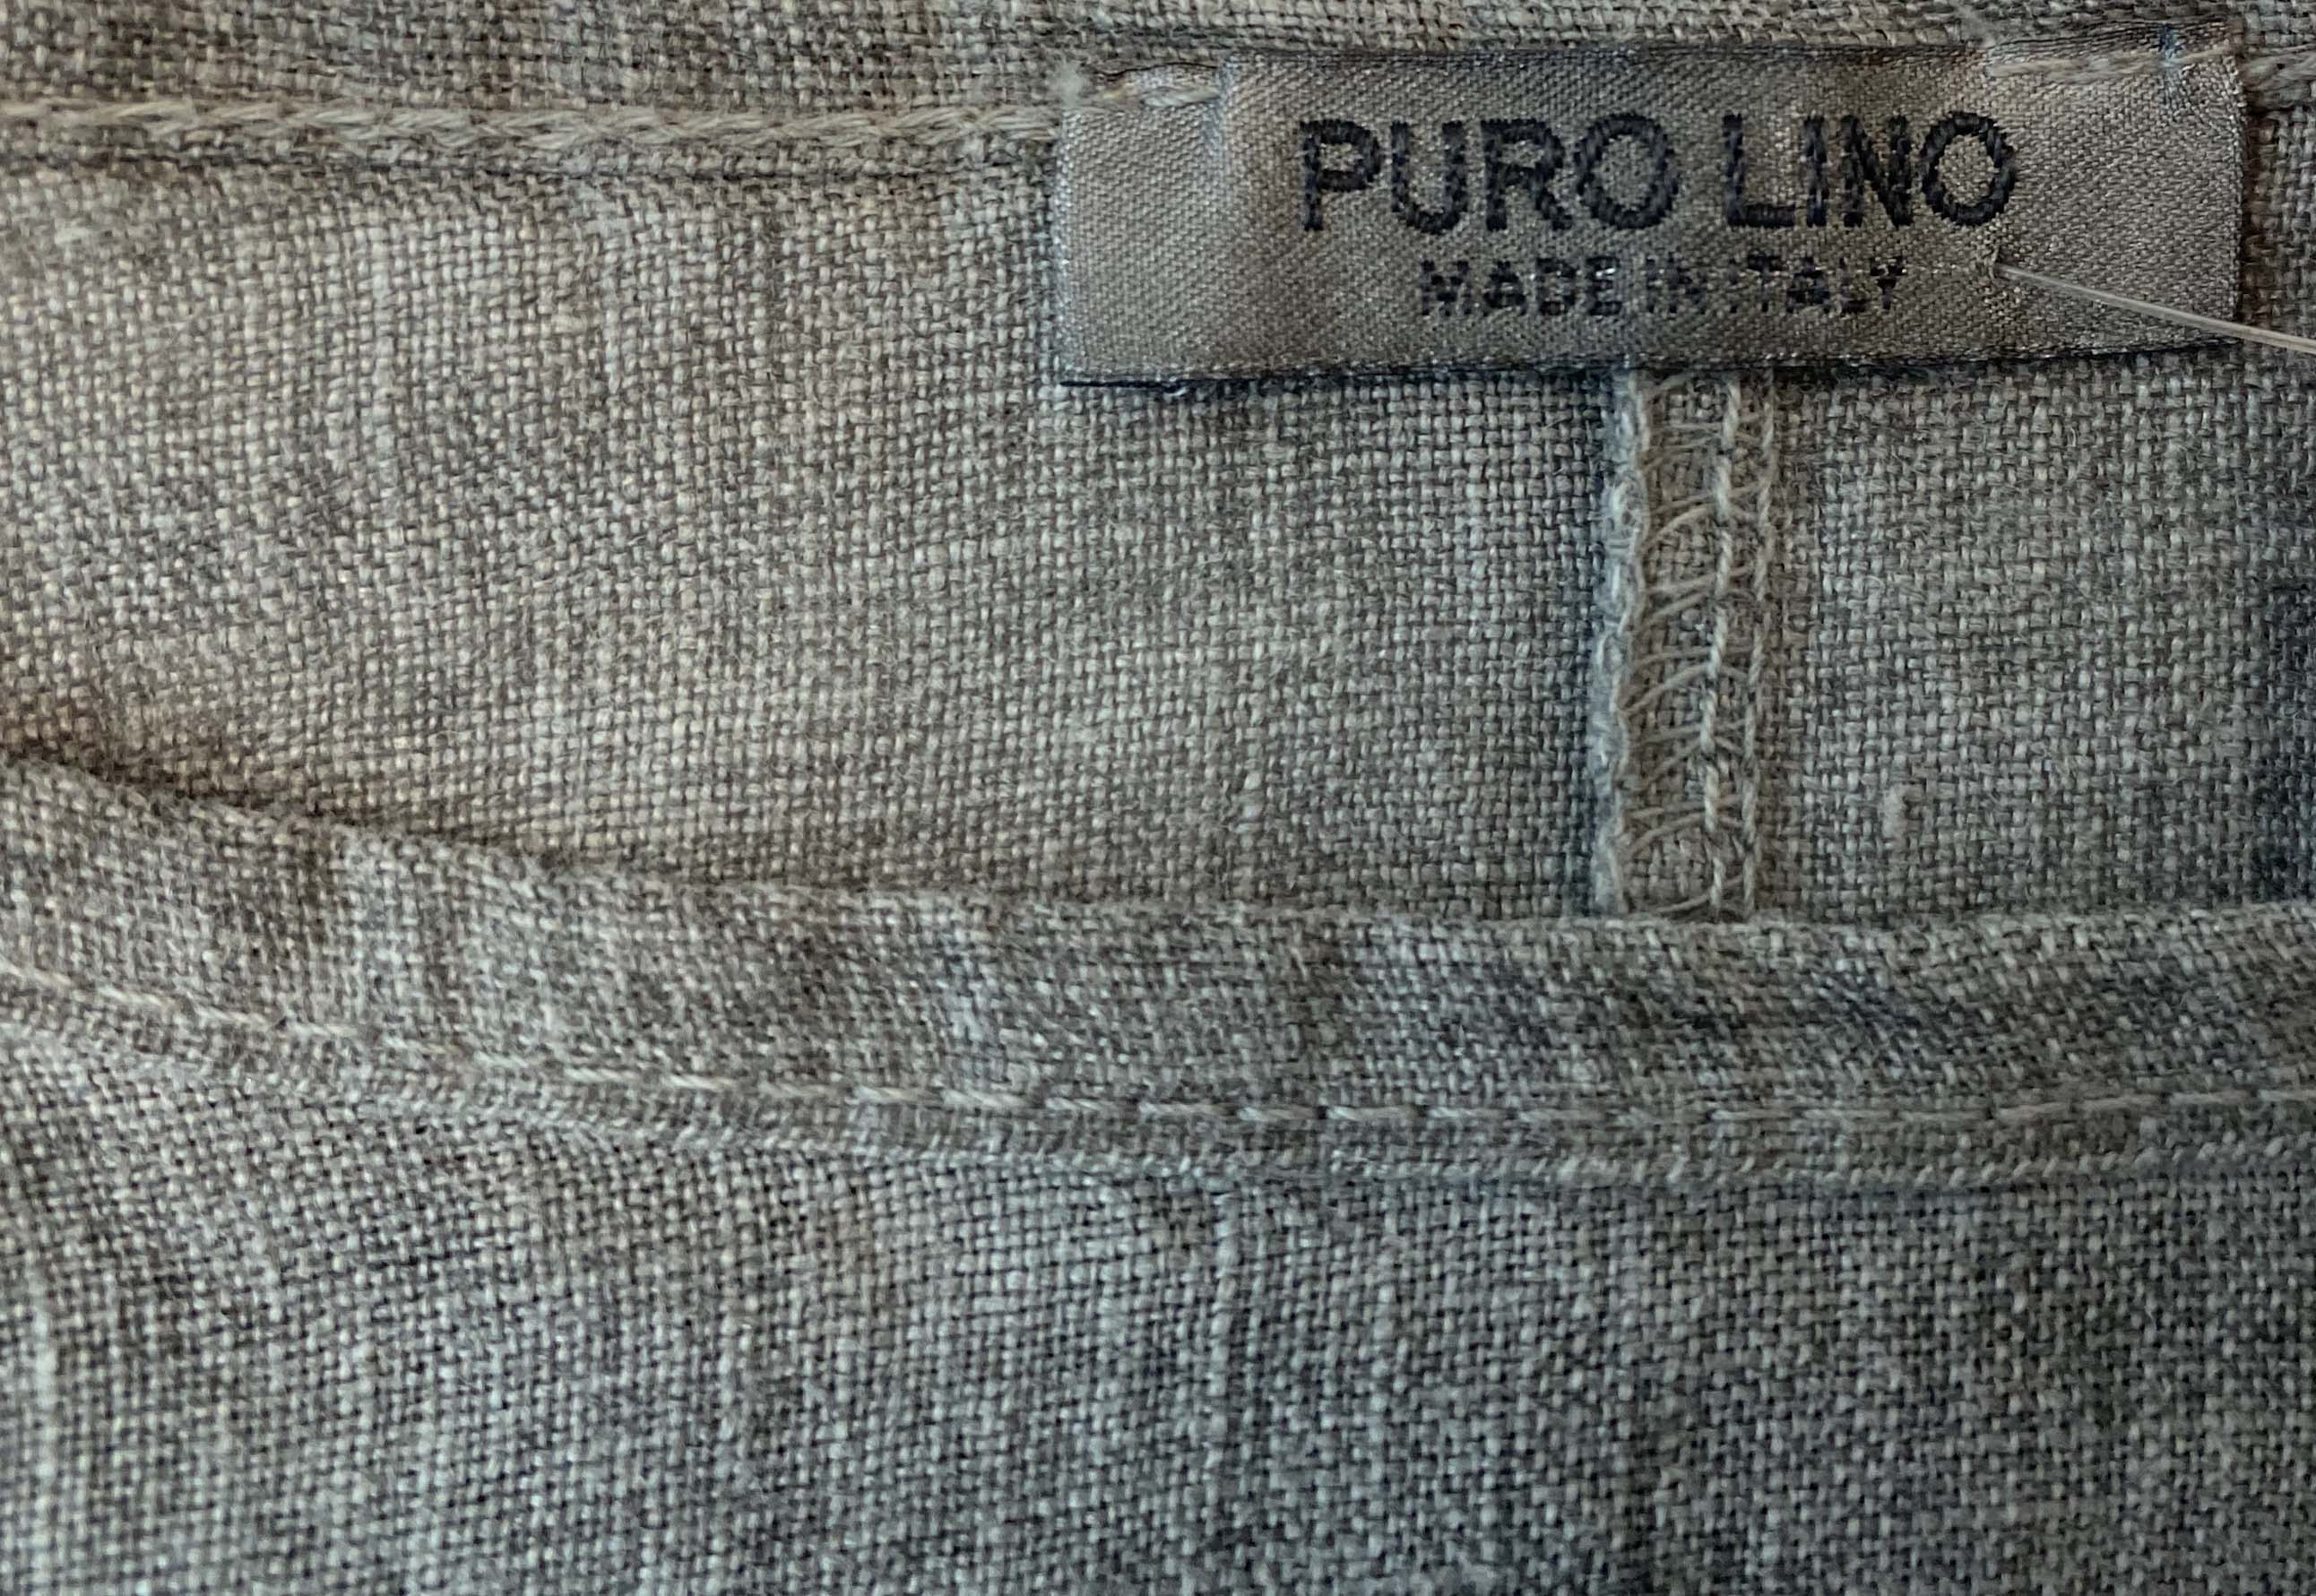 PURO LINO Grey Top 